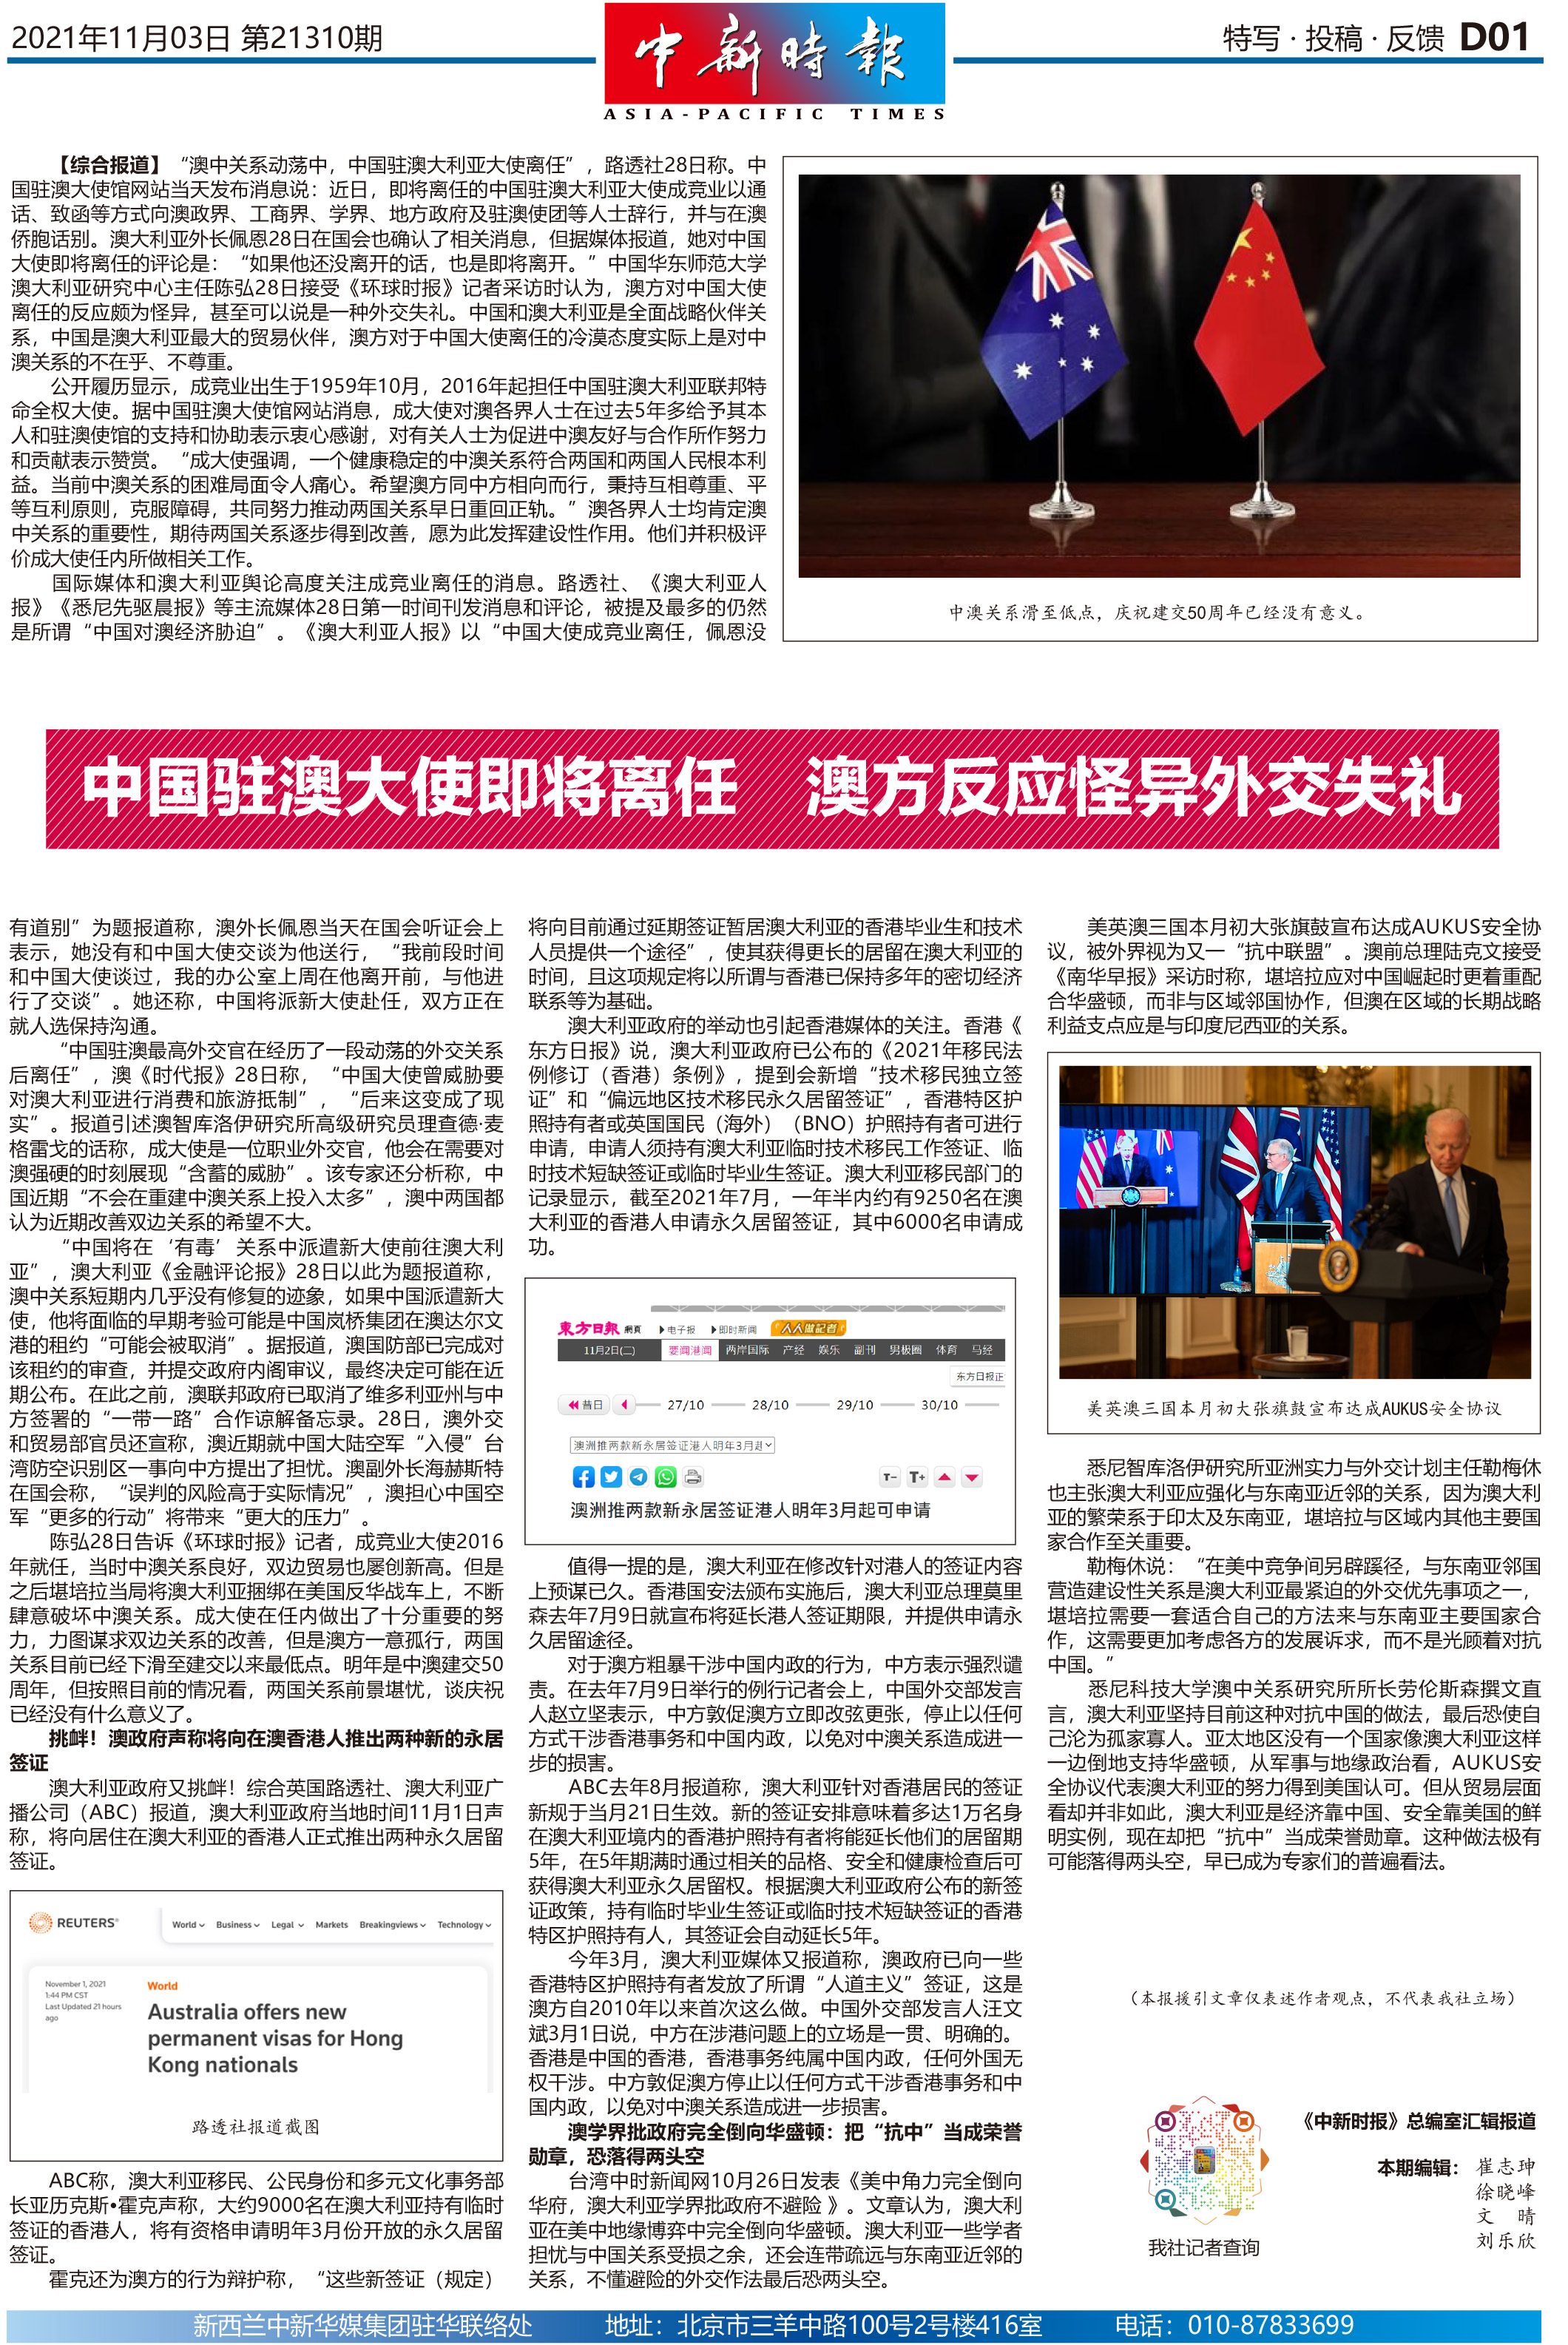 中国驻澳大使即将离任 澳方反应怪异外交失礼